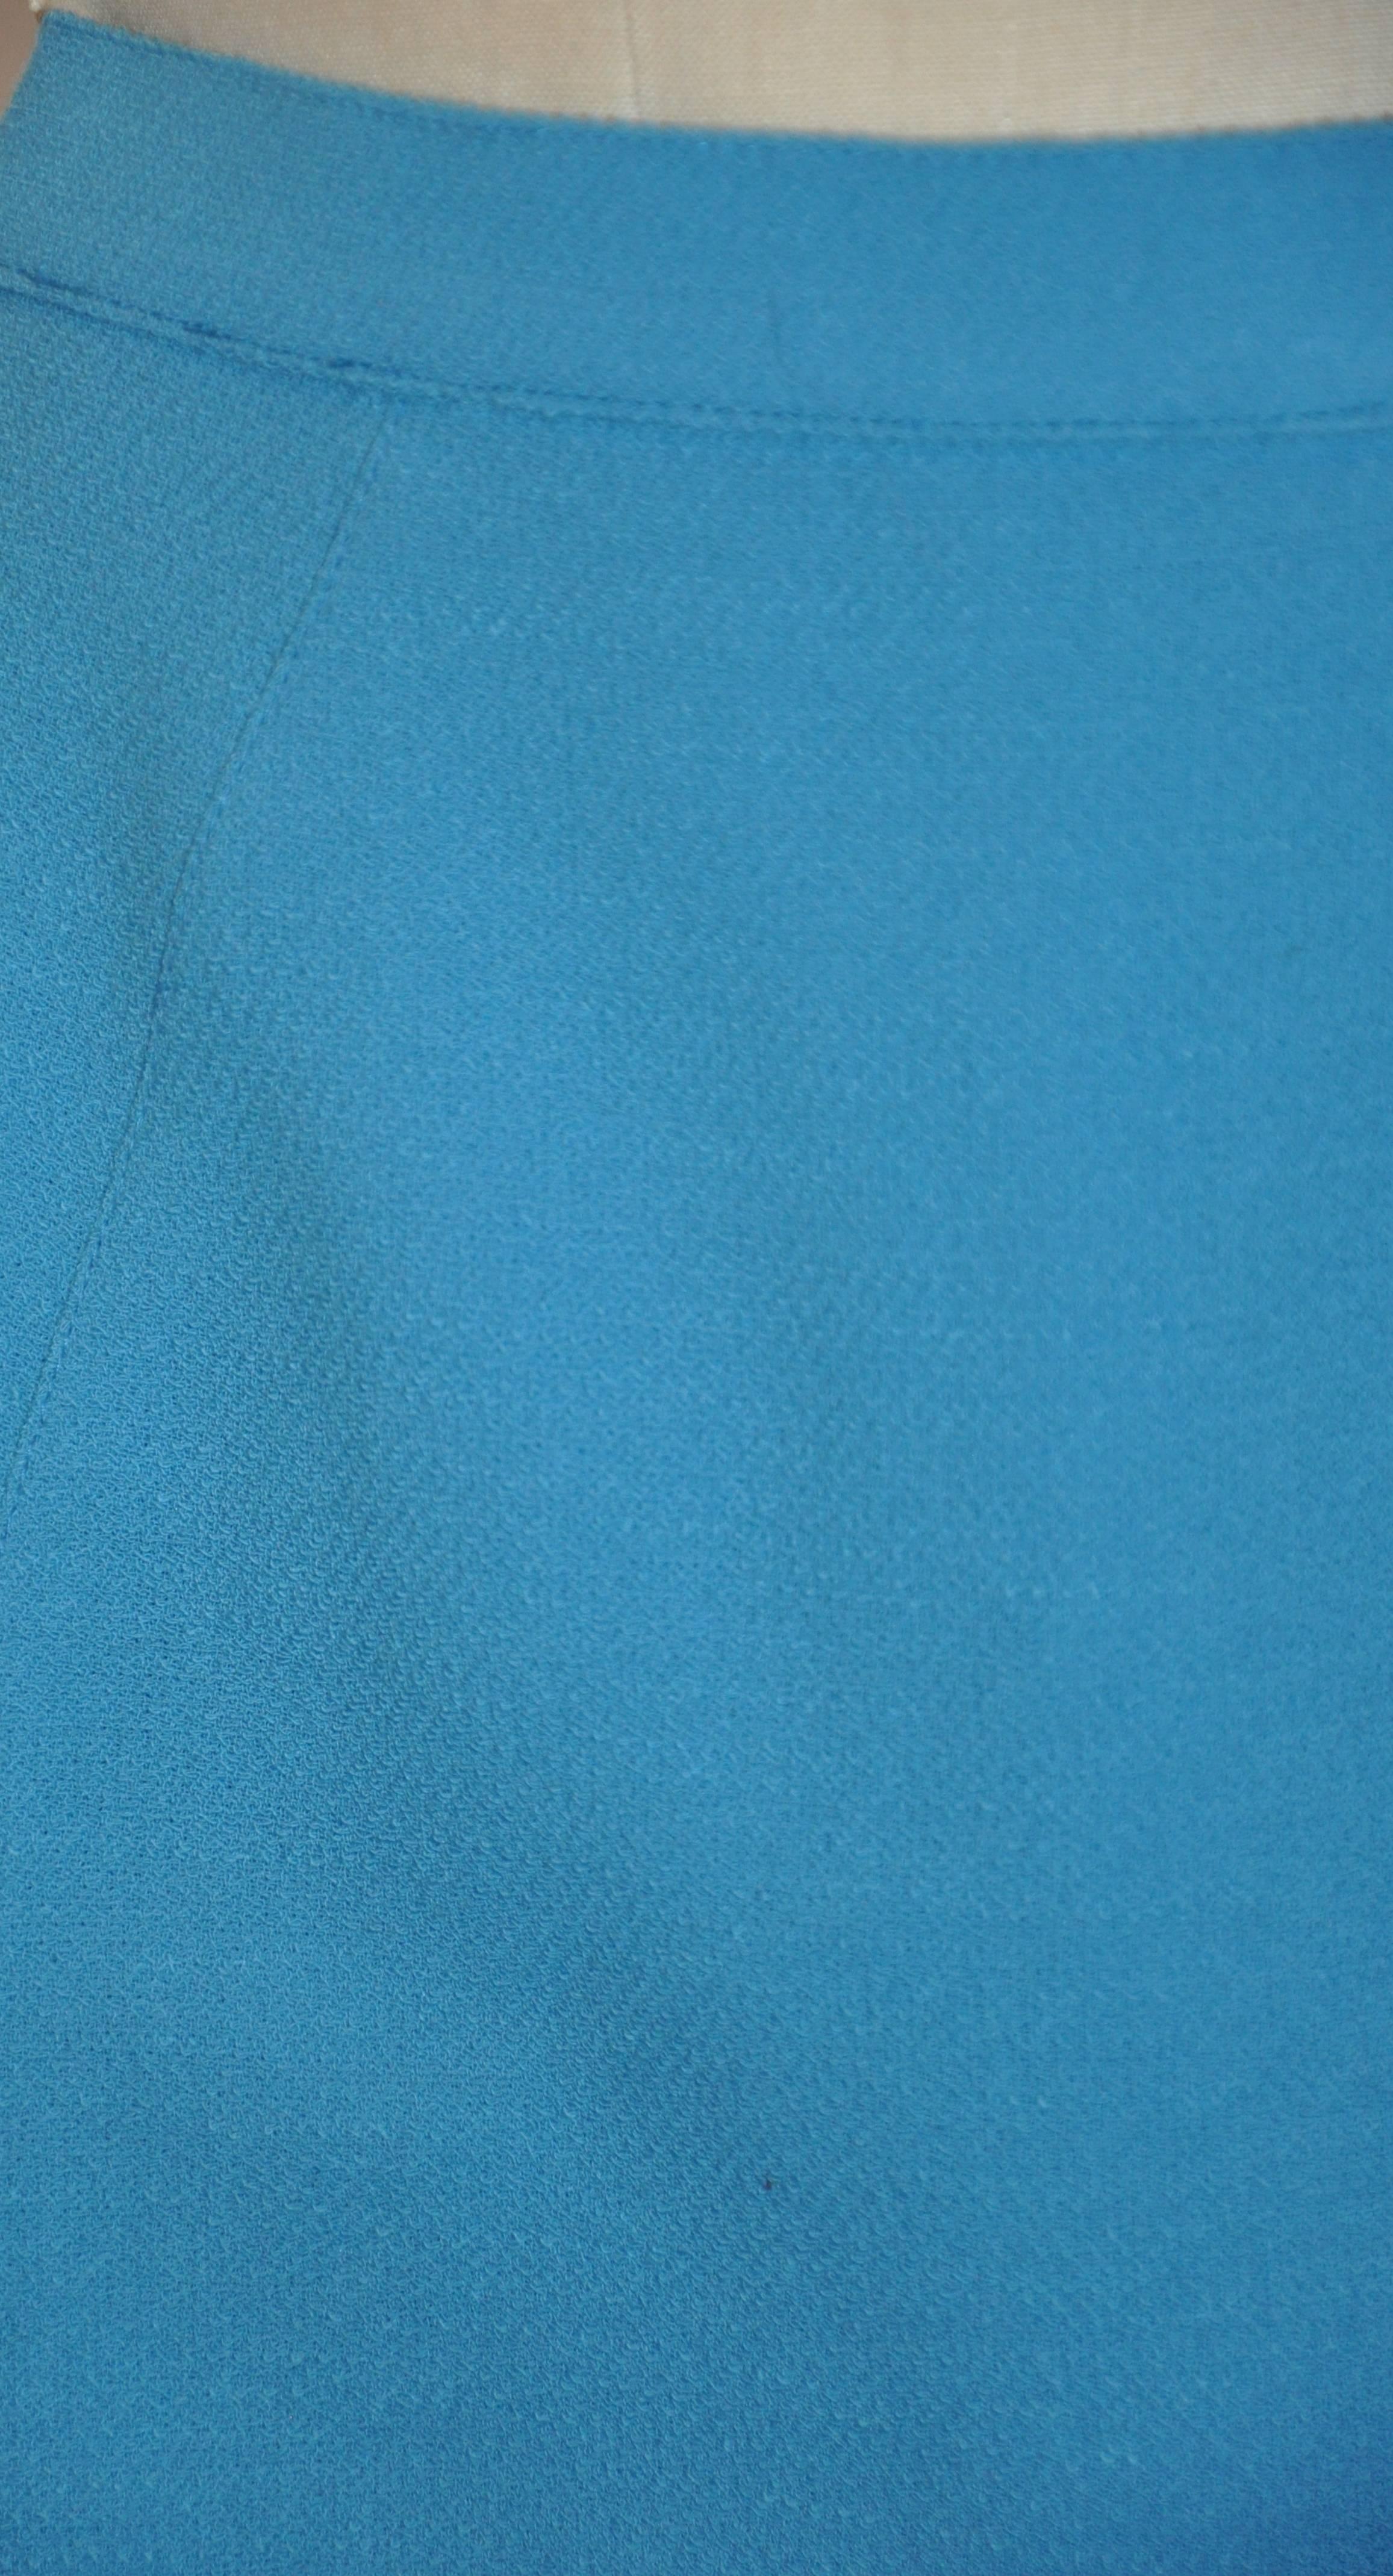        La magnifique jupe en crêpe de laine turquoise de Thierry Mugler, entièrement doublée, est ornée de surpiqûres détaillées et mesure 17 1/2